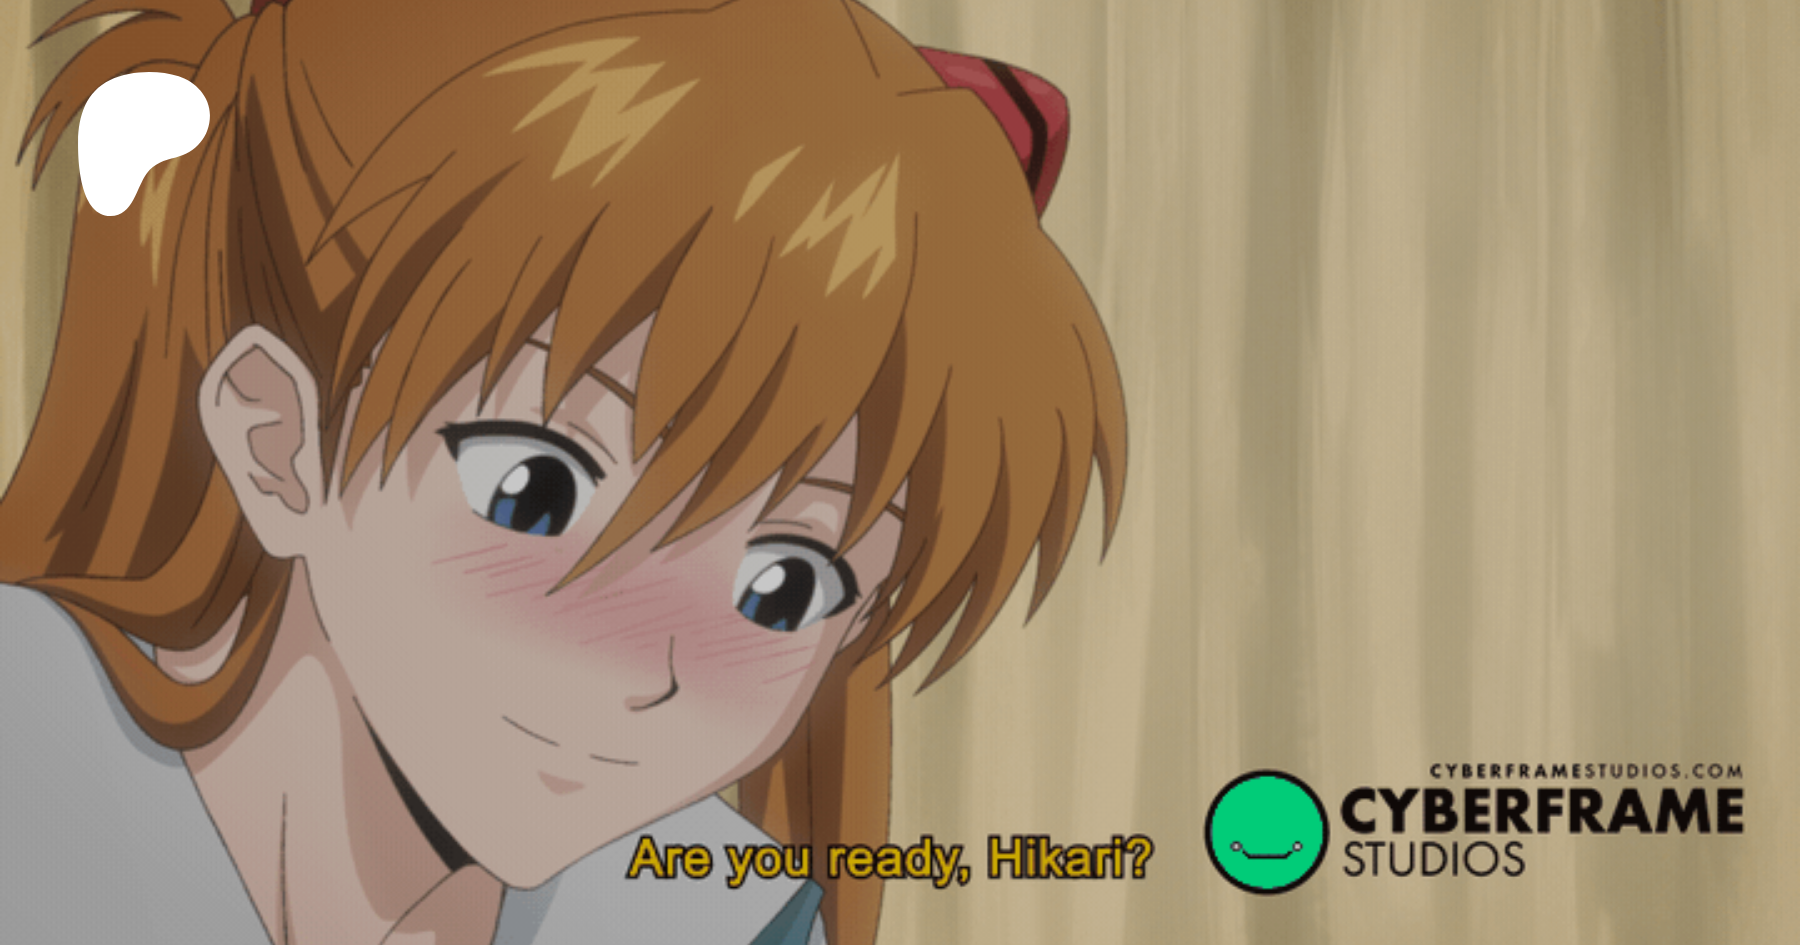 Hikari's dilemma